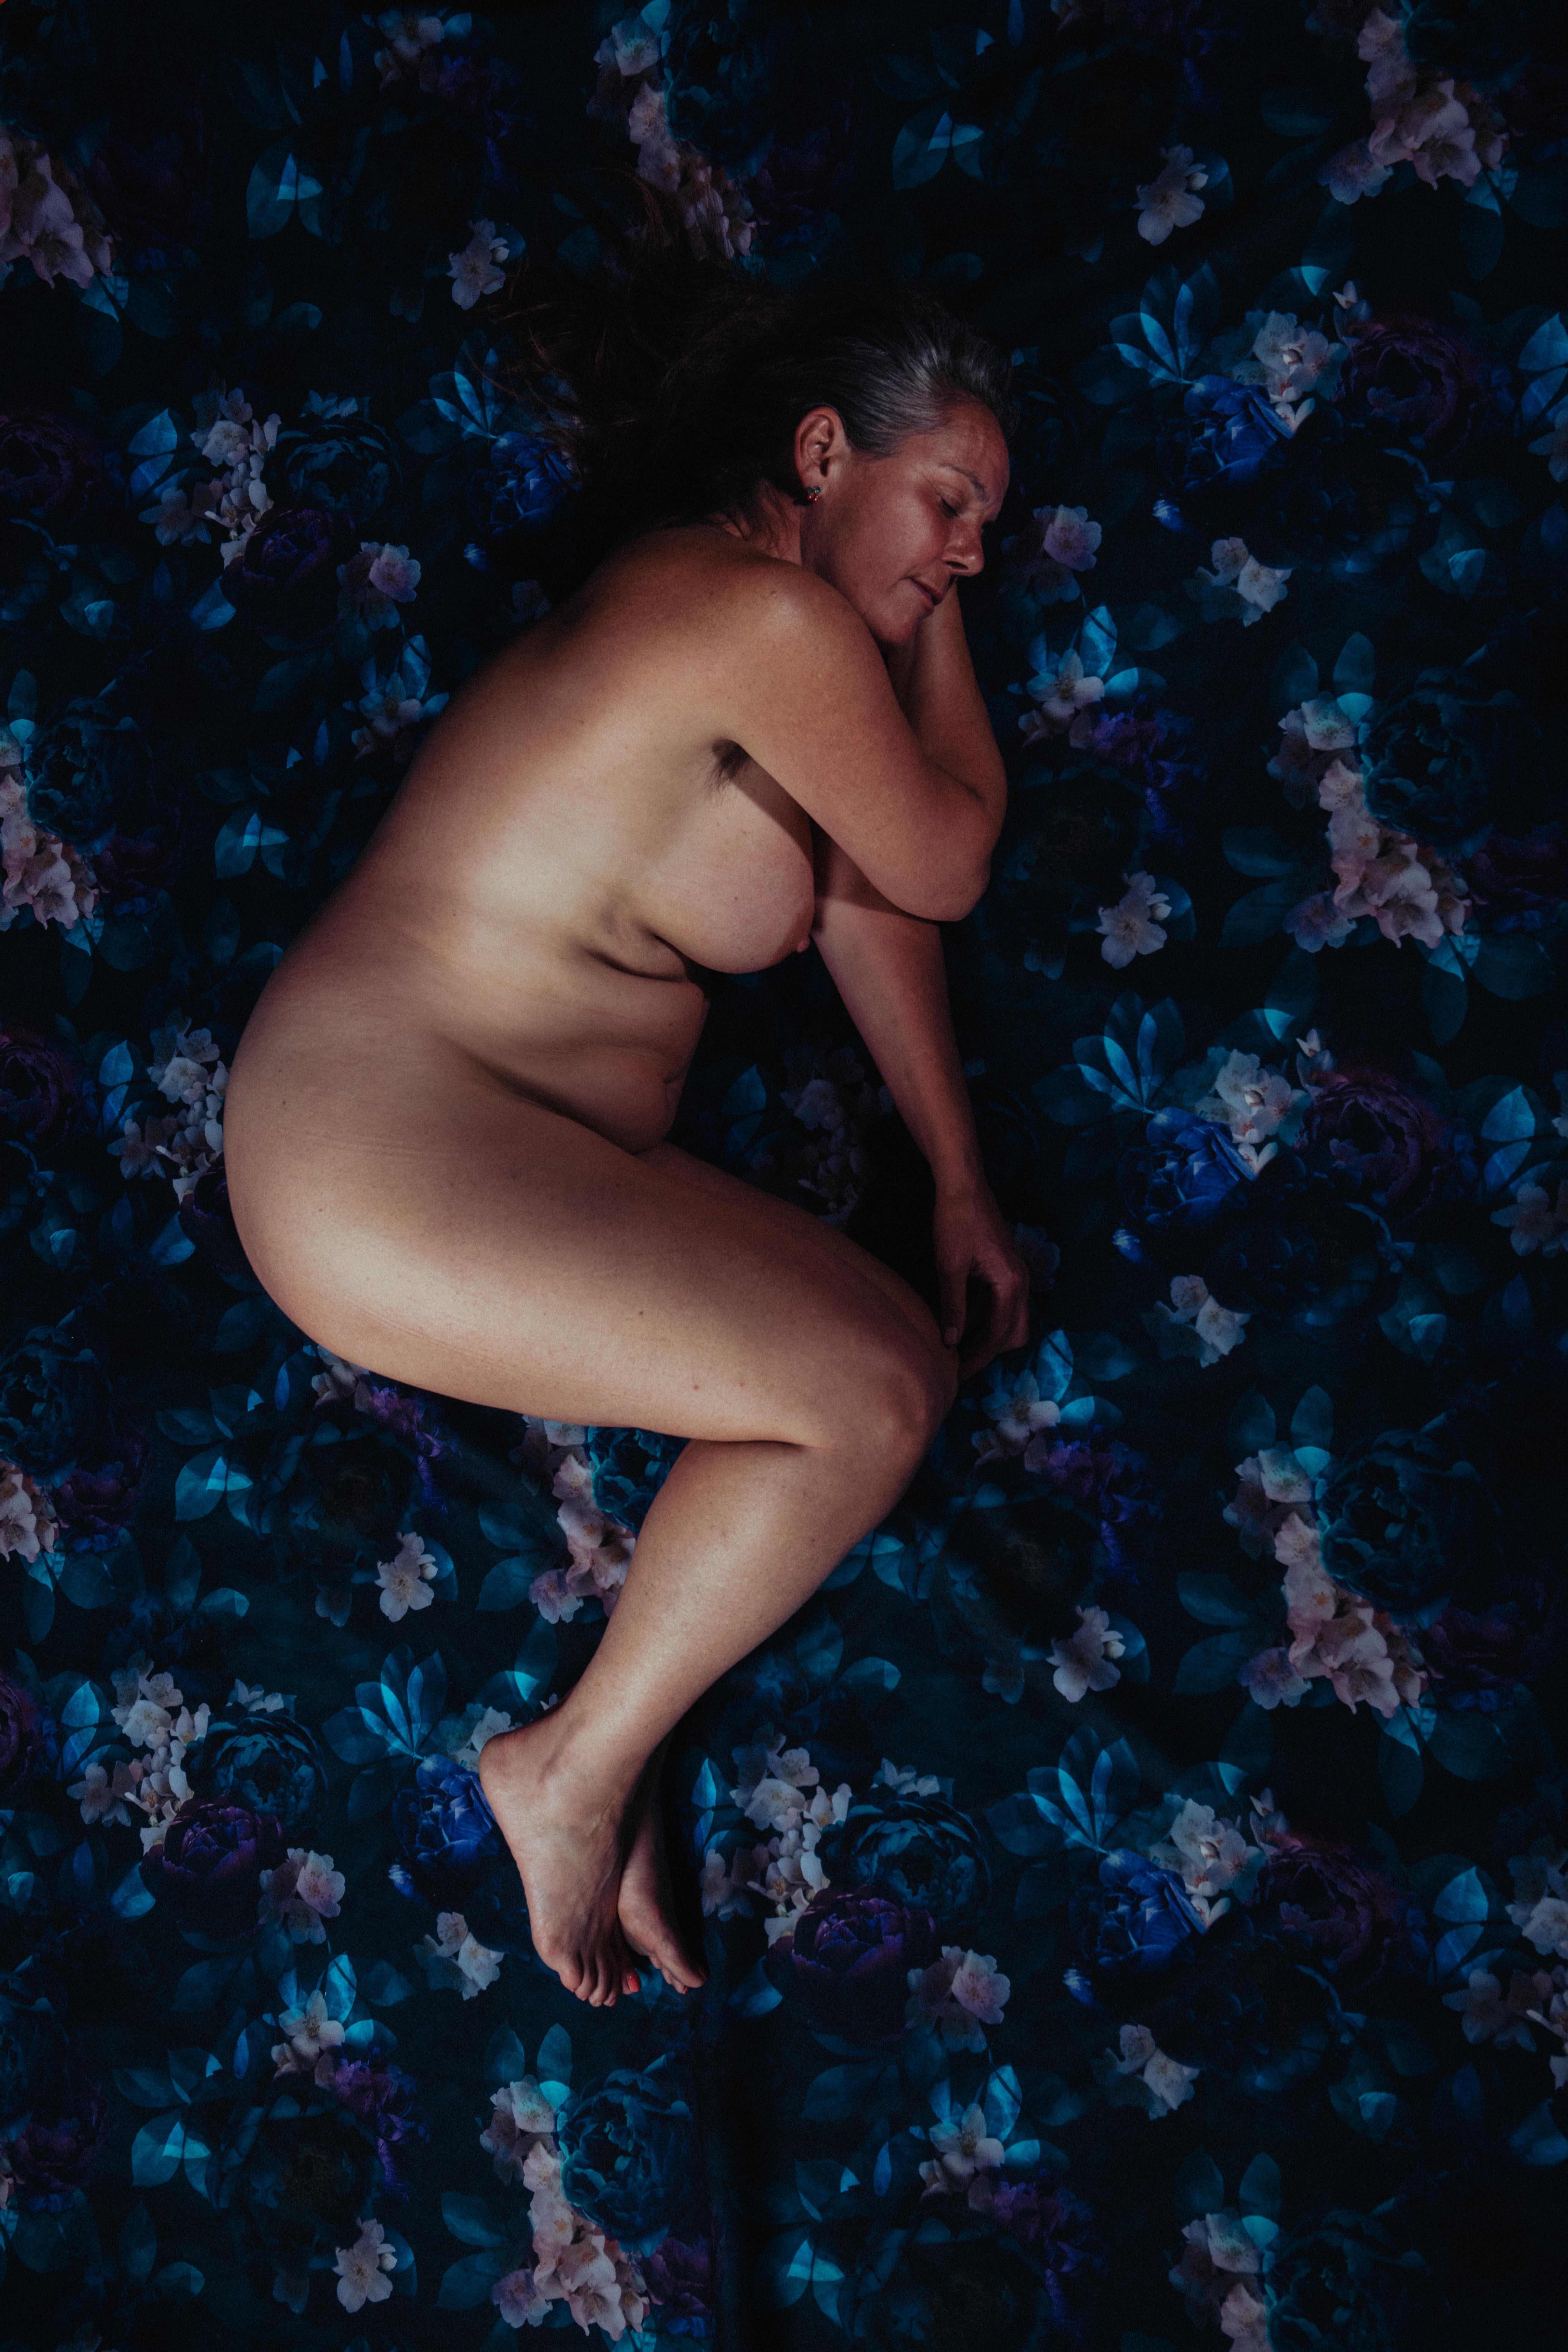 Portrait de femme nue, photographie d'art nue en édition limitée de 3 exemplaires - Photograph de Laurentina Miksys